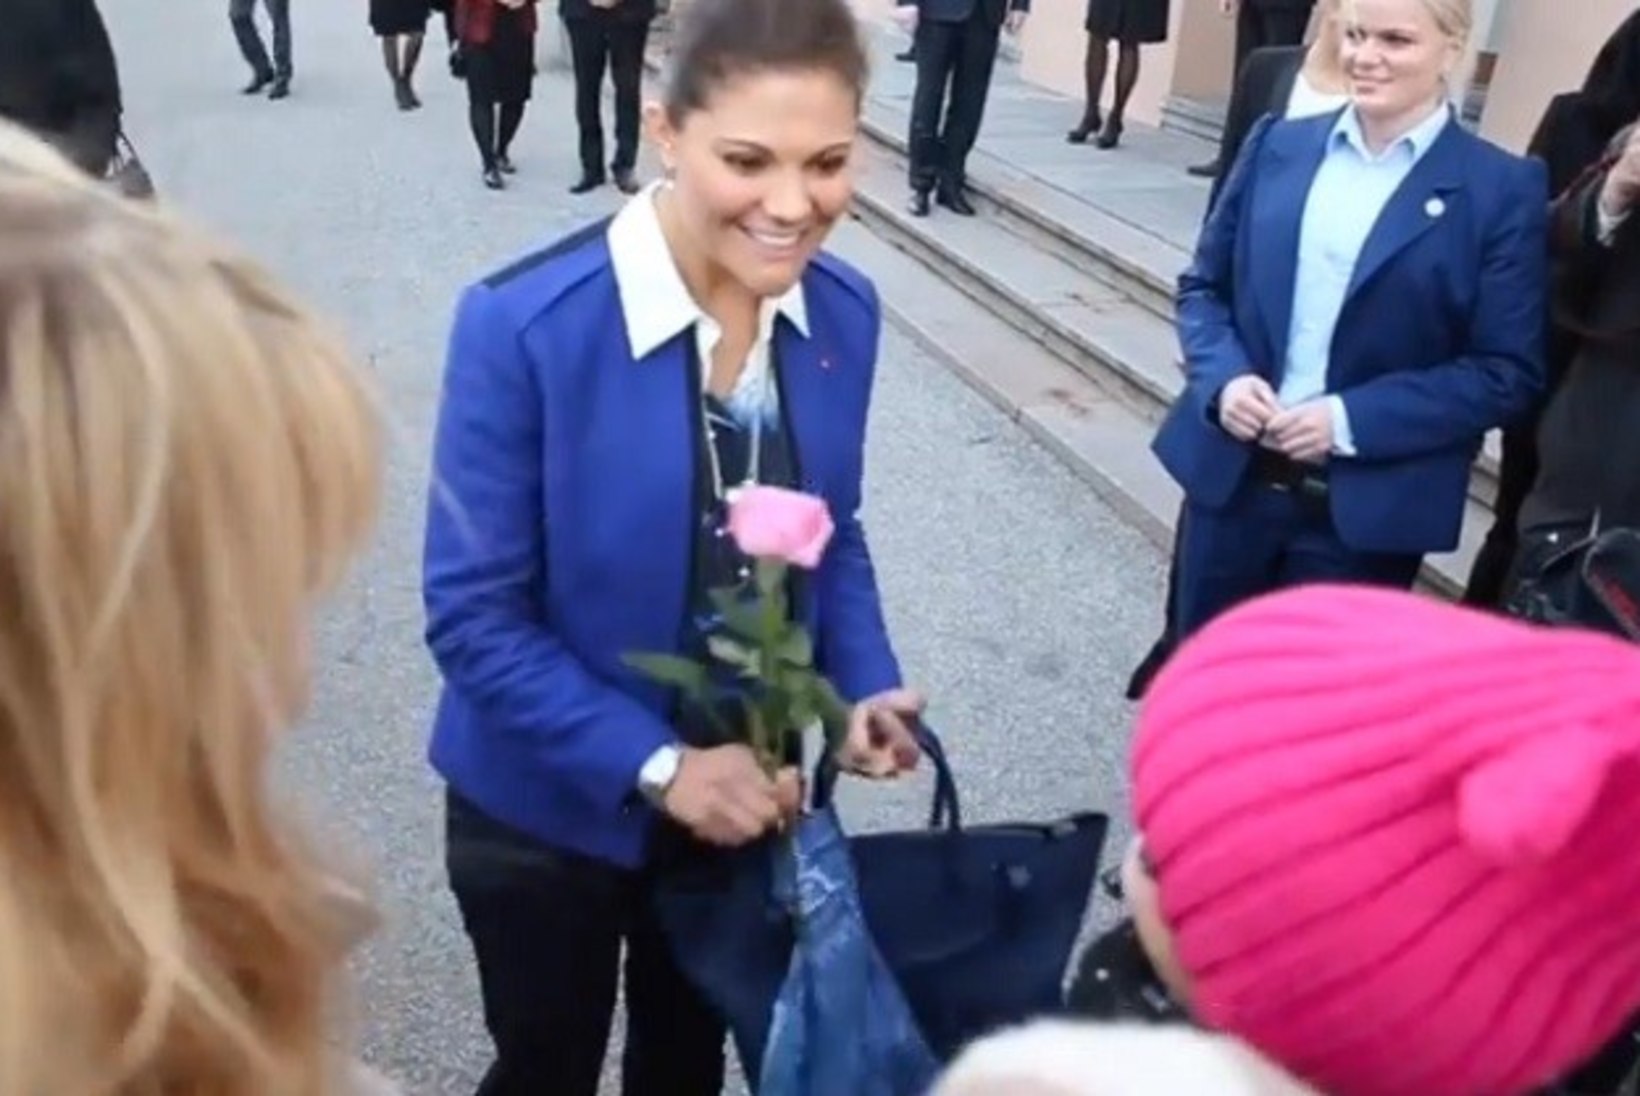 ÕHTULEHE VIDEO: Victoriale roosi kinkinud neiu: "Ta oli väga ilus ja armas."